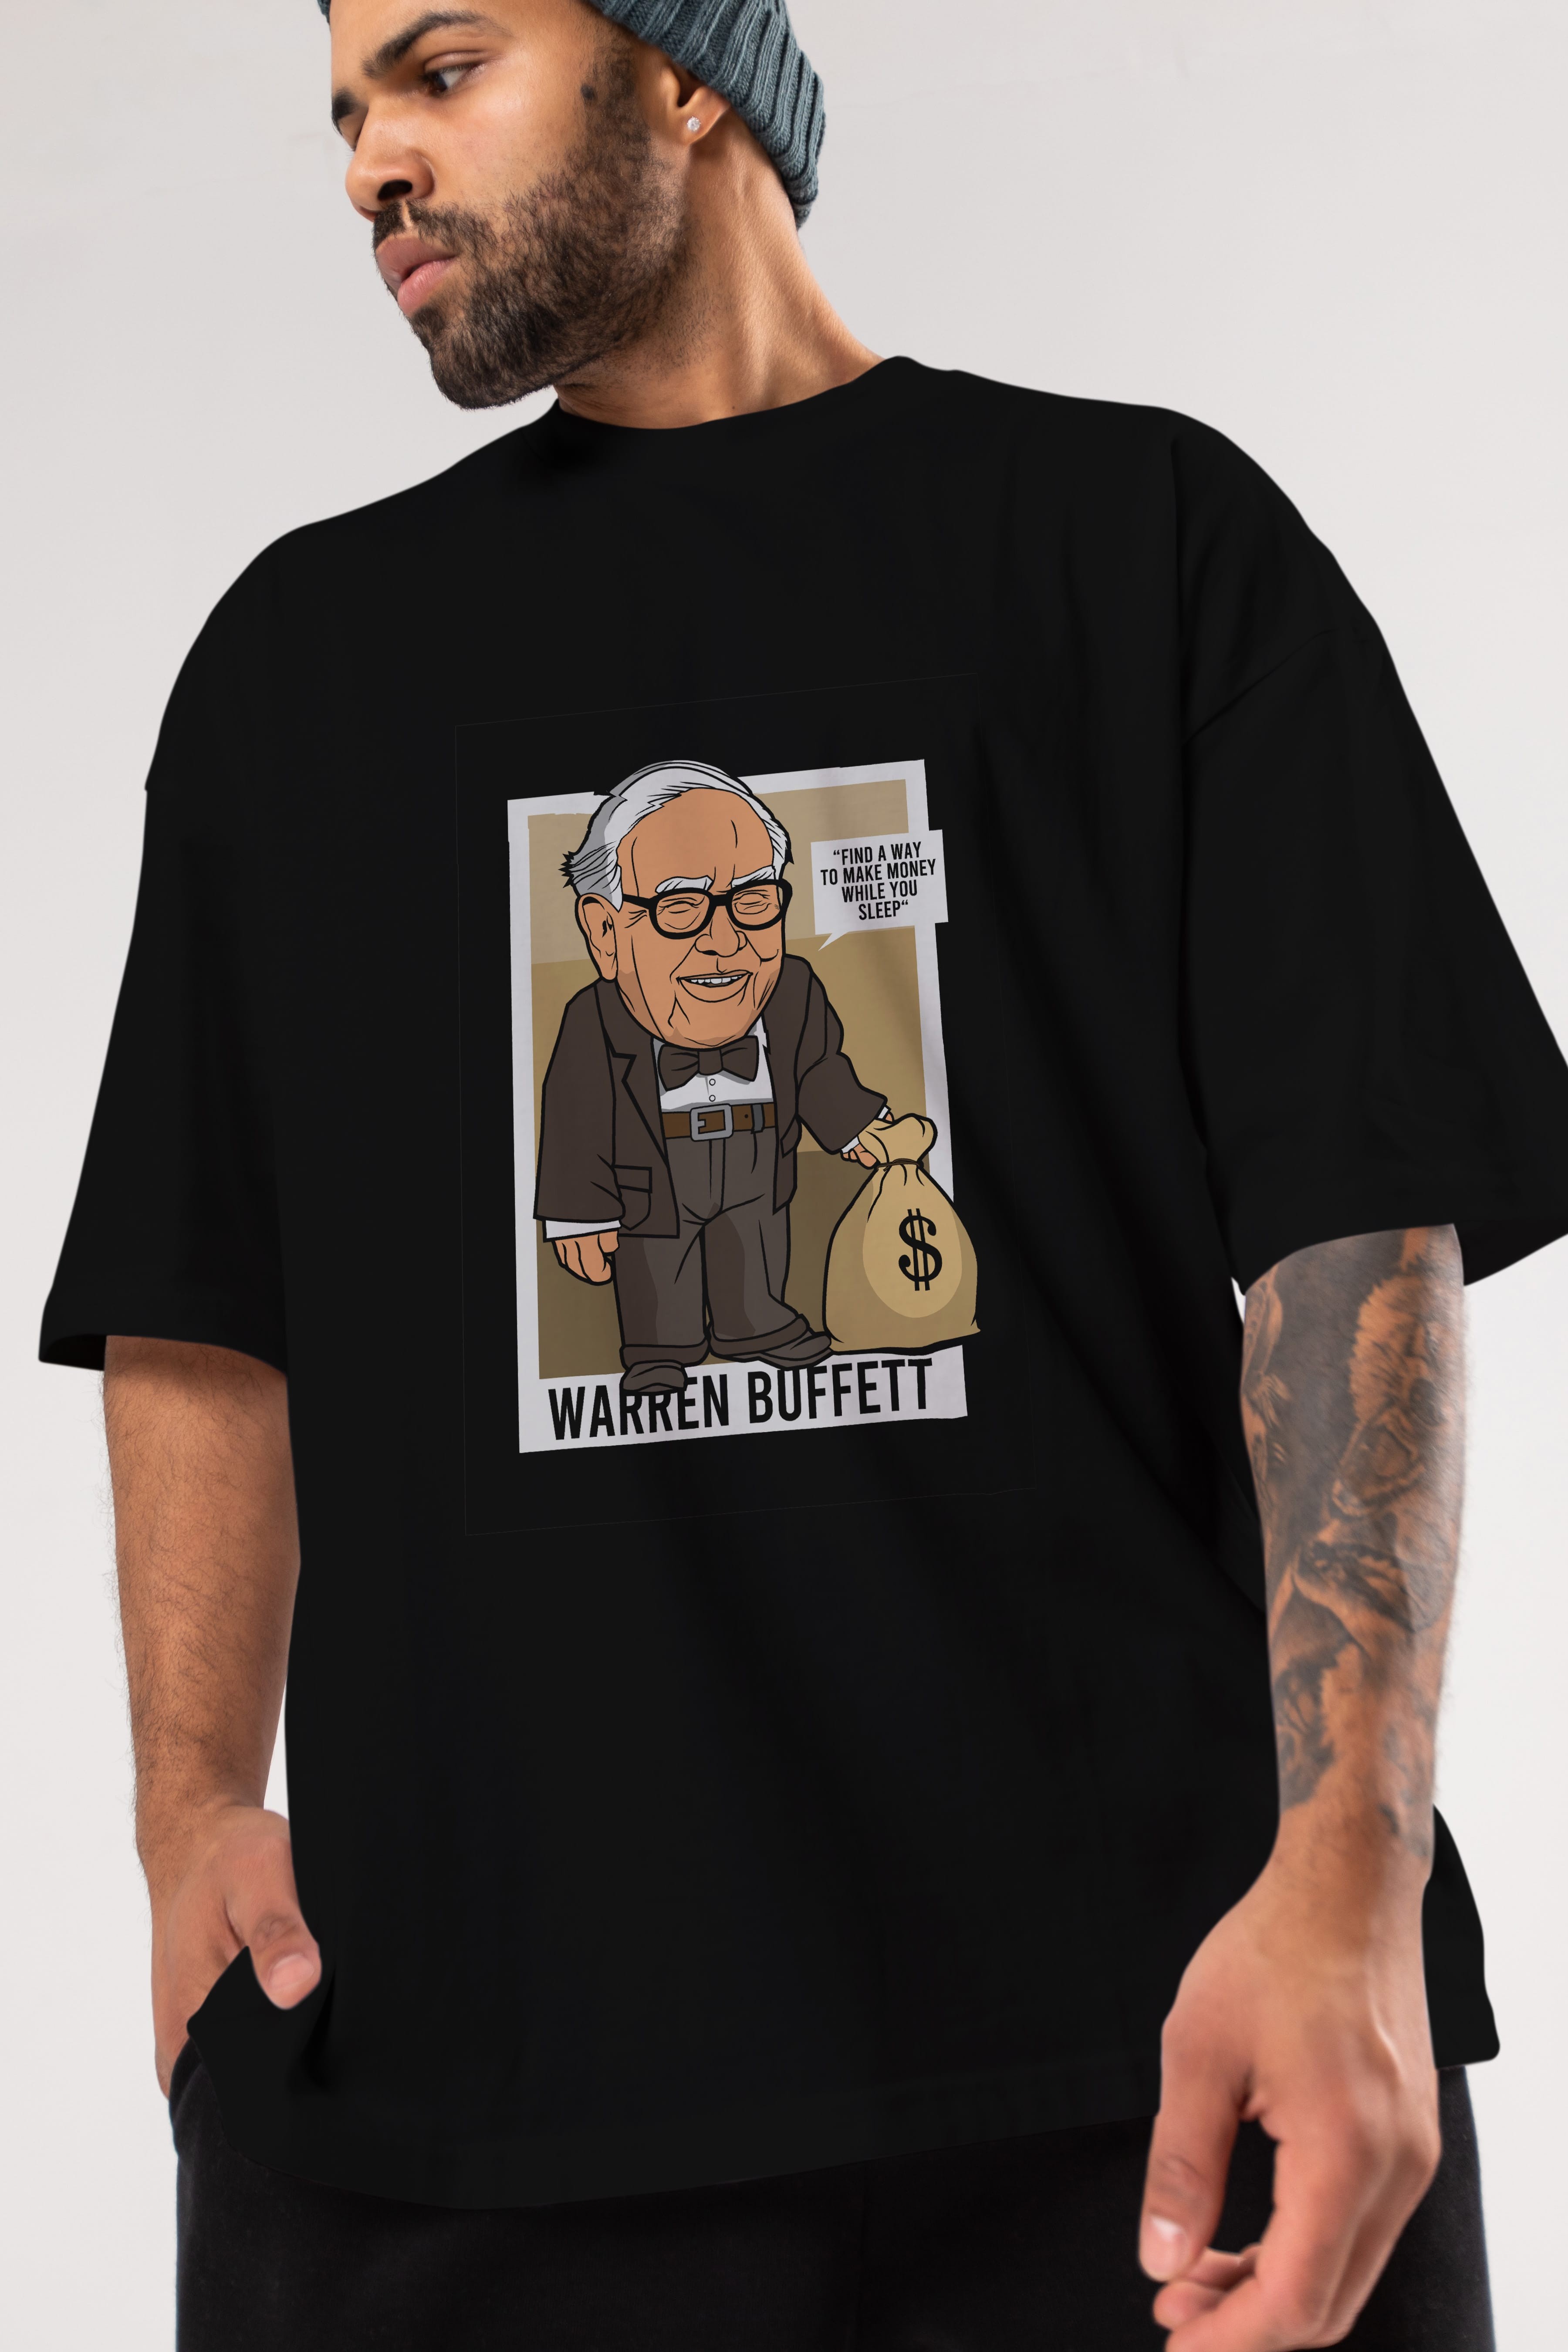 Warren Buffet Up Carl Ön Baskılı Oversize t-shirt Erkek Kadın Unisex %100 Pamuk tişort